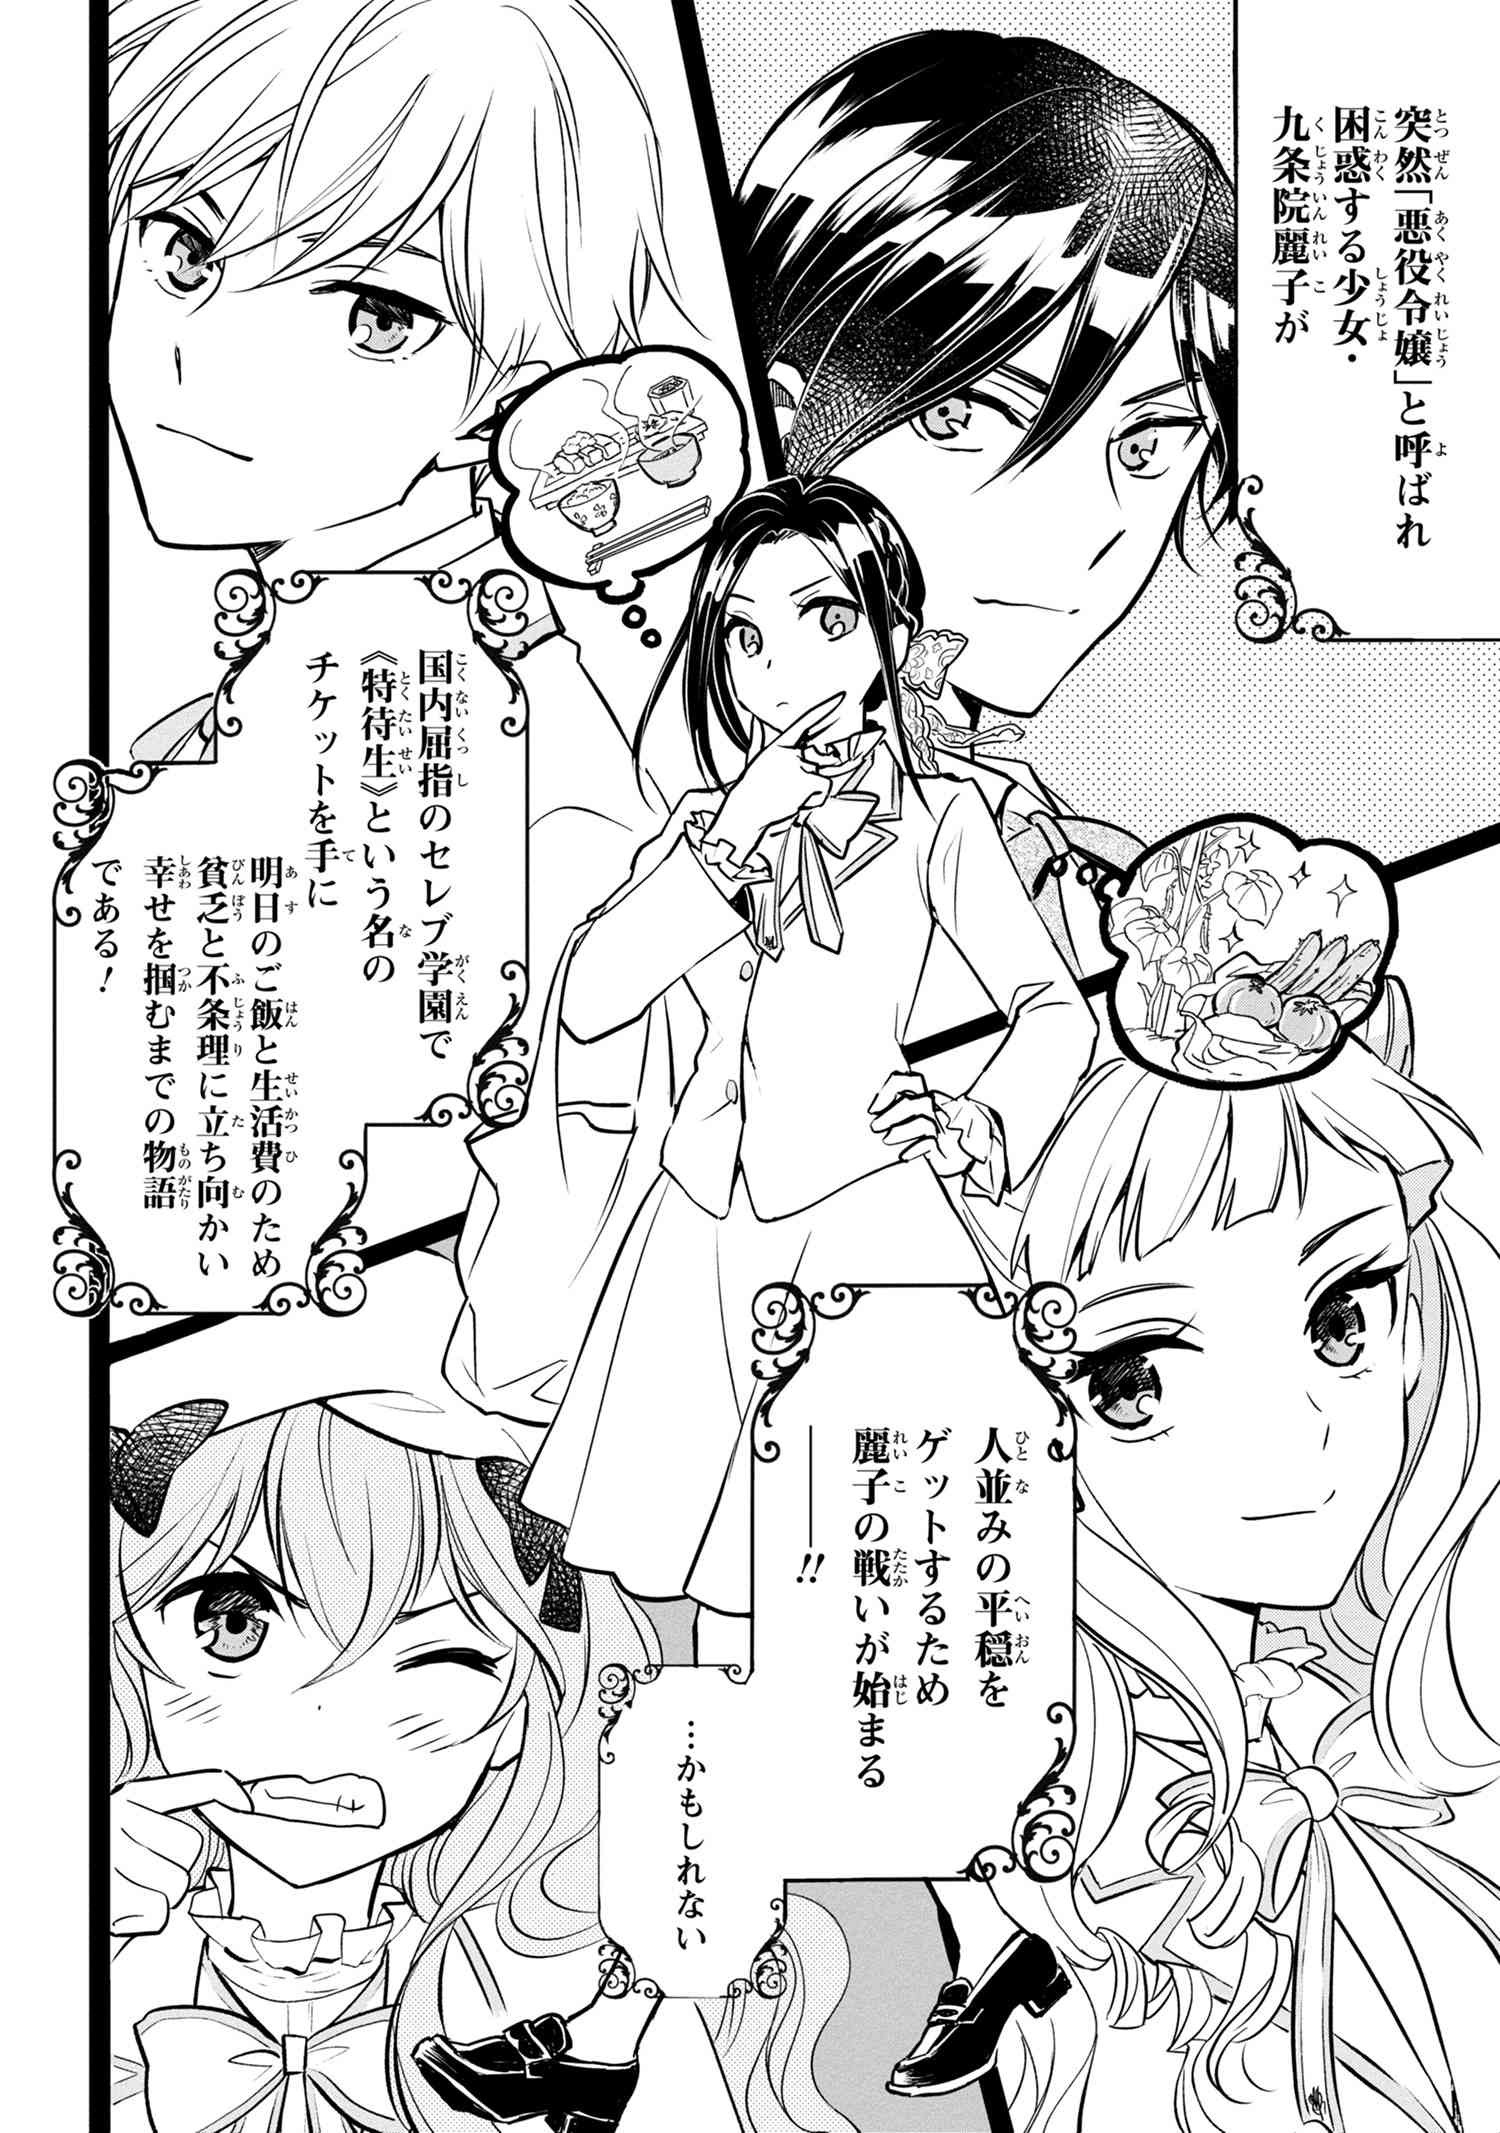 Reiko no Fuugi Akuyaku Reijou to Yobarete imasu ga, tada no Binbou Musume desu - Chapter 1-2 - Page 20